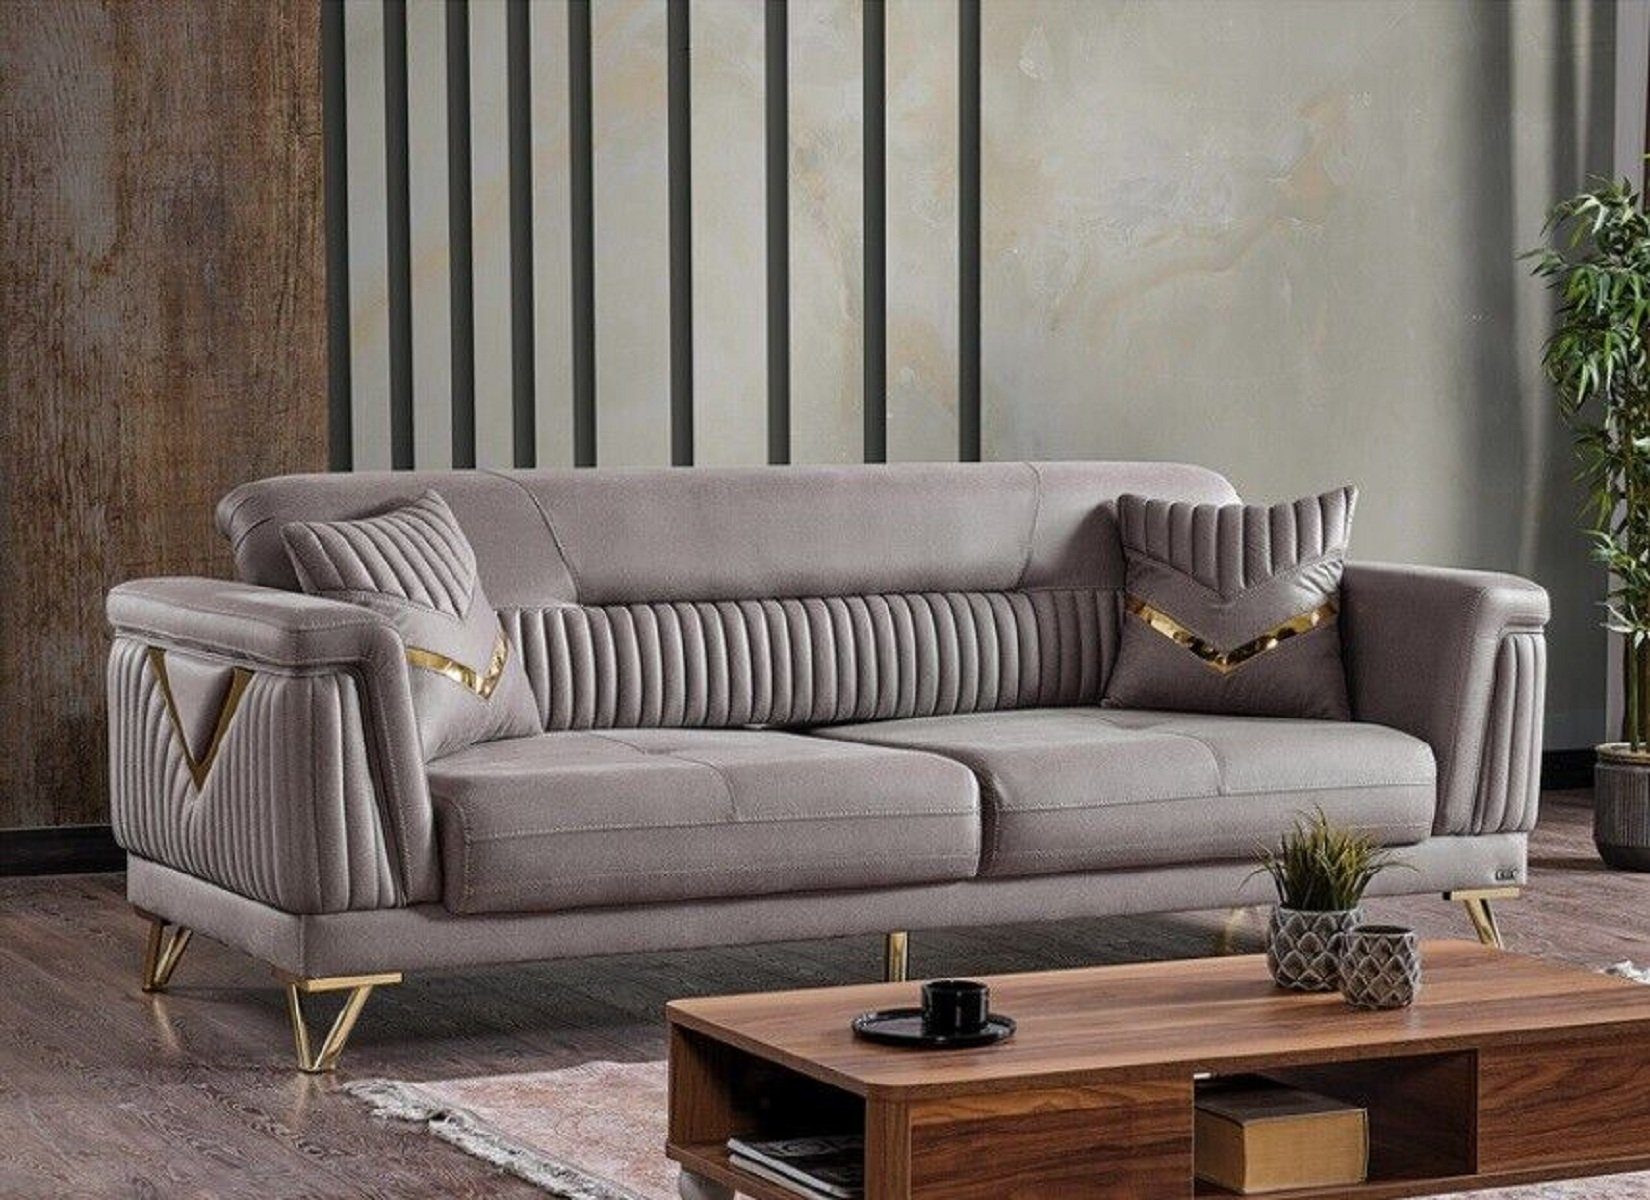 JVmoebel 3-Sitzer Sofa Couch 3 1 Made Sofa, Europa in Teile, Sofas Couchen Polster Luxus Sitzer Wohnzimmer Textil